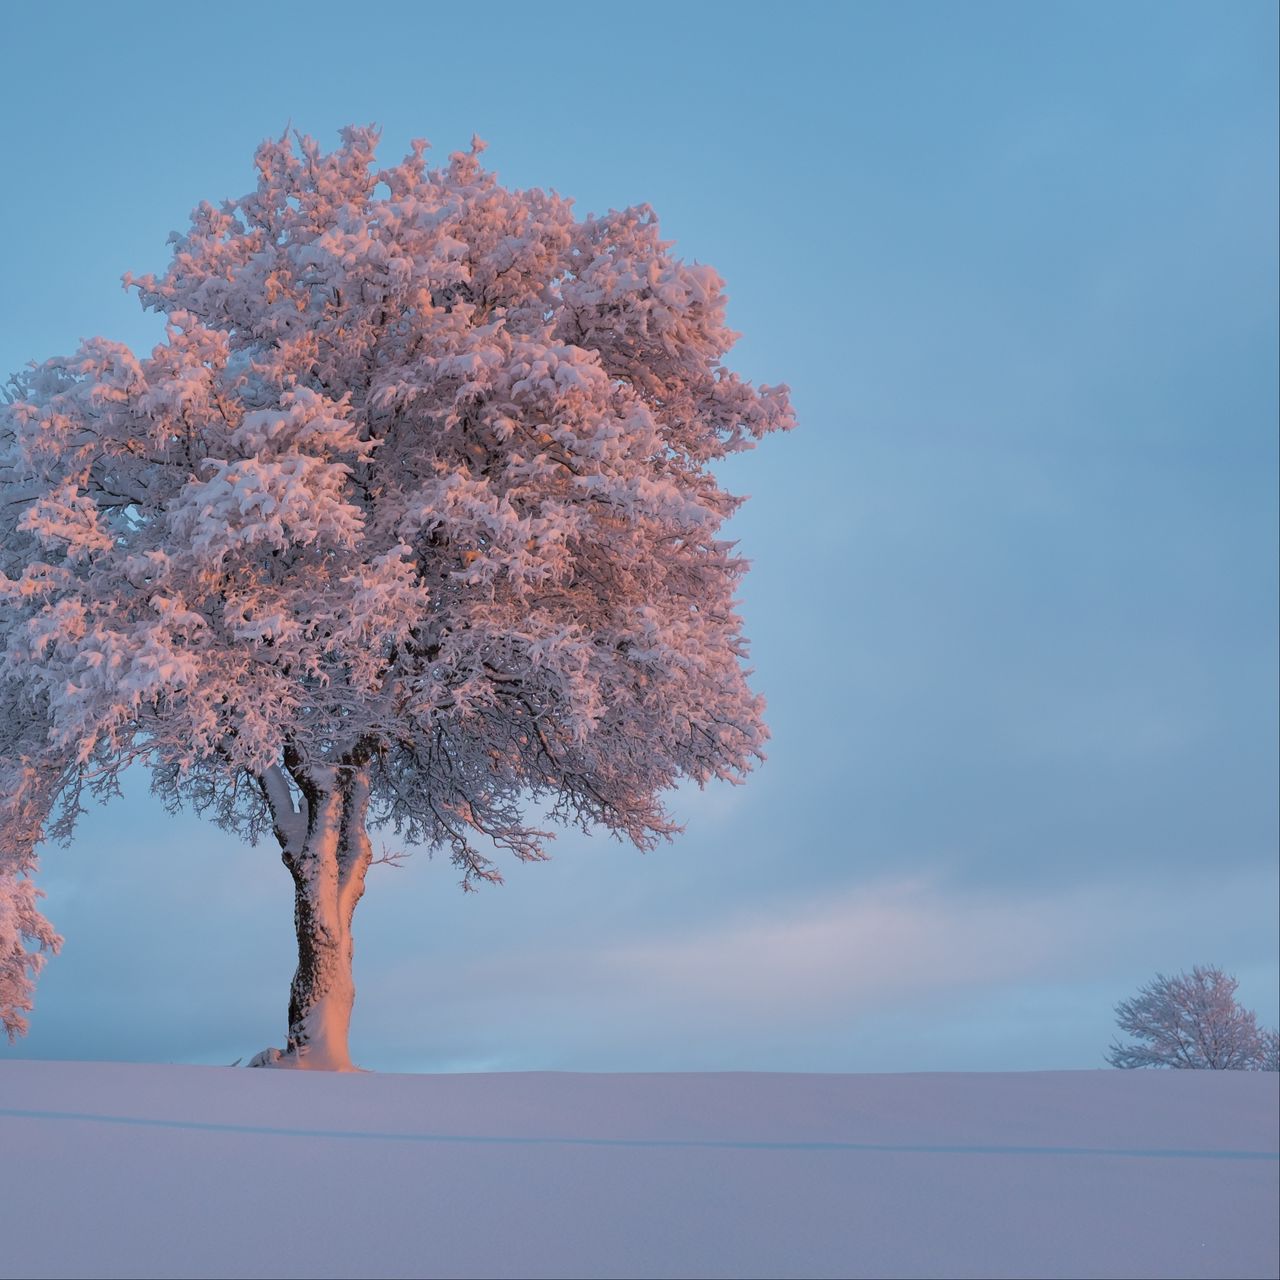 Download wallpaper 1280x1280 tree, frost, snow, winter, snowy ipad, ipad ipad mini for parallax HD background